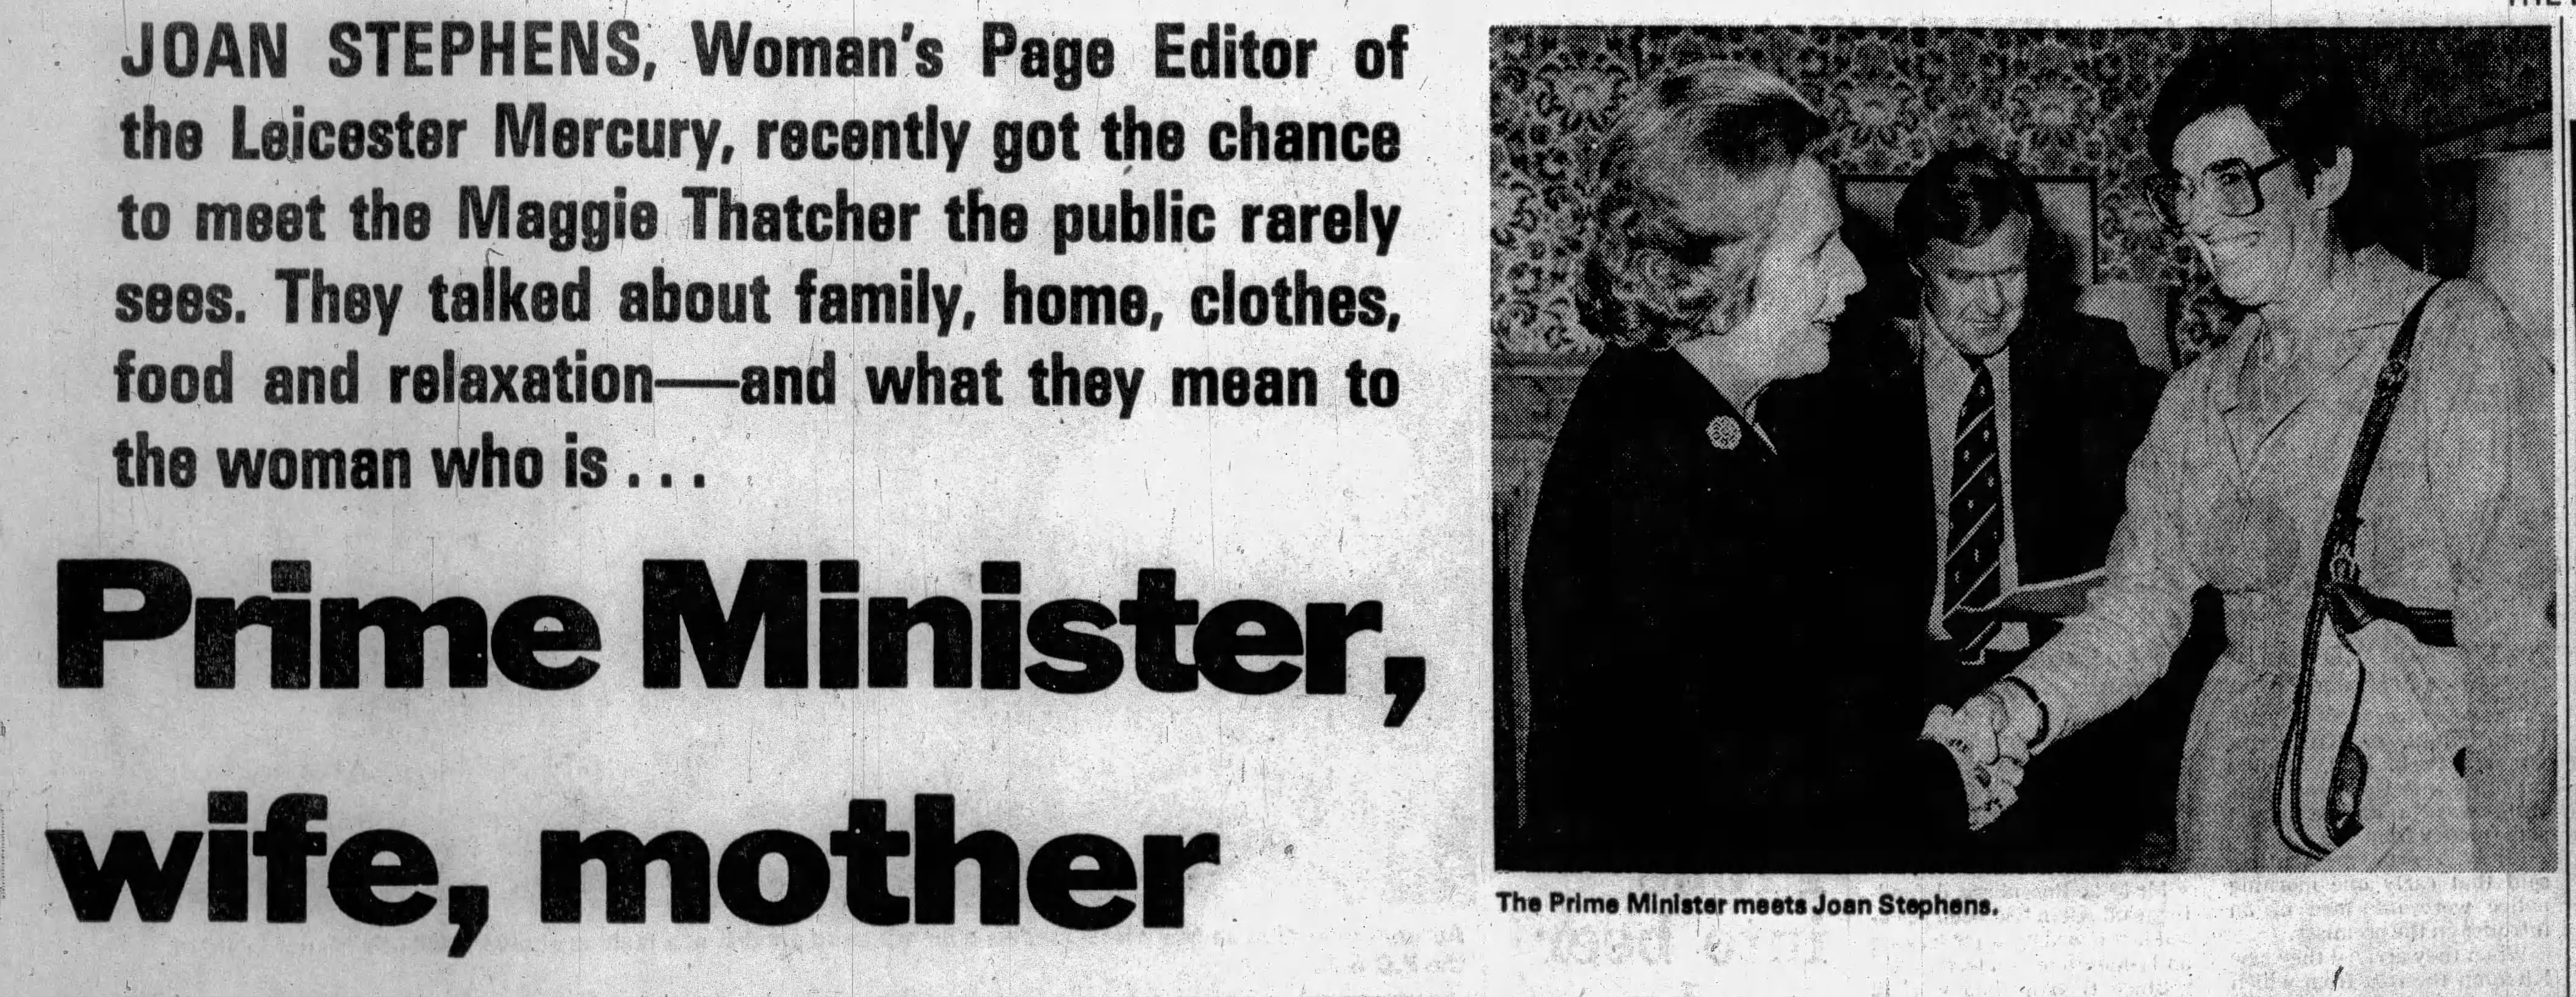 journalist adoration Thatcher